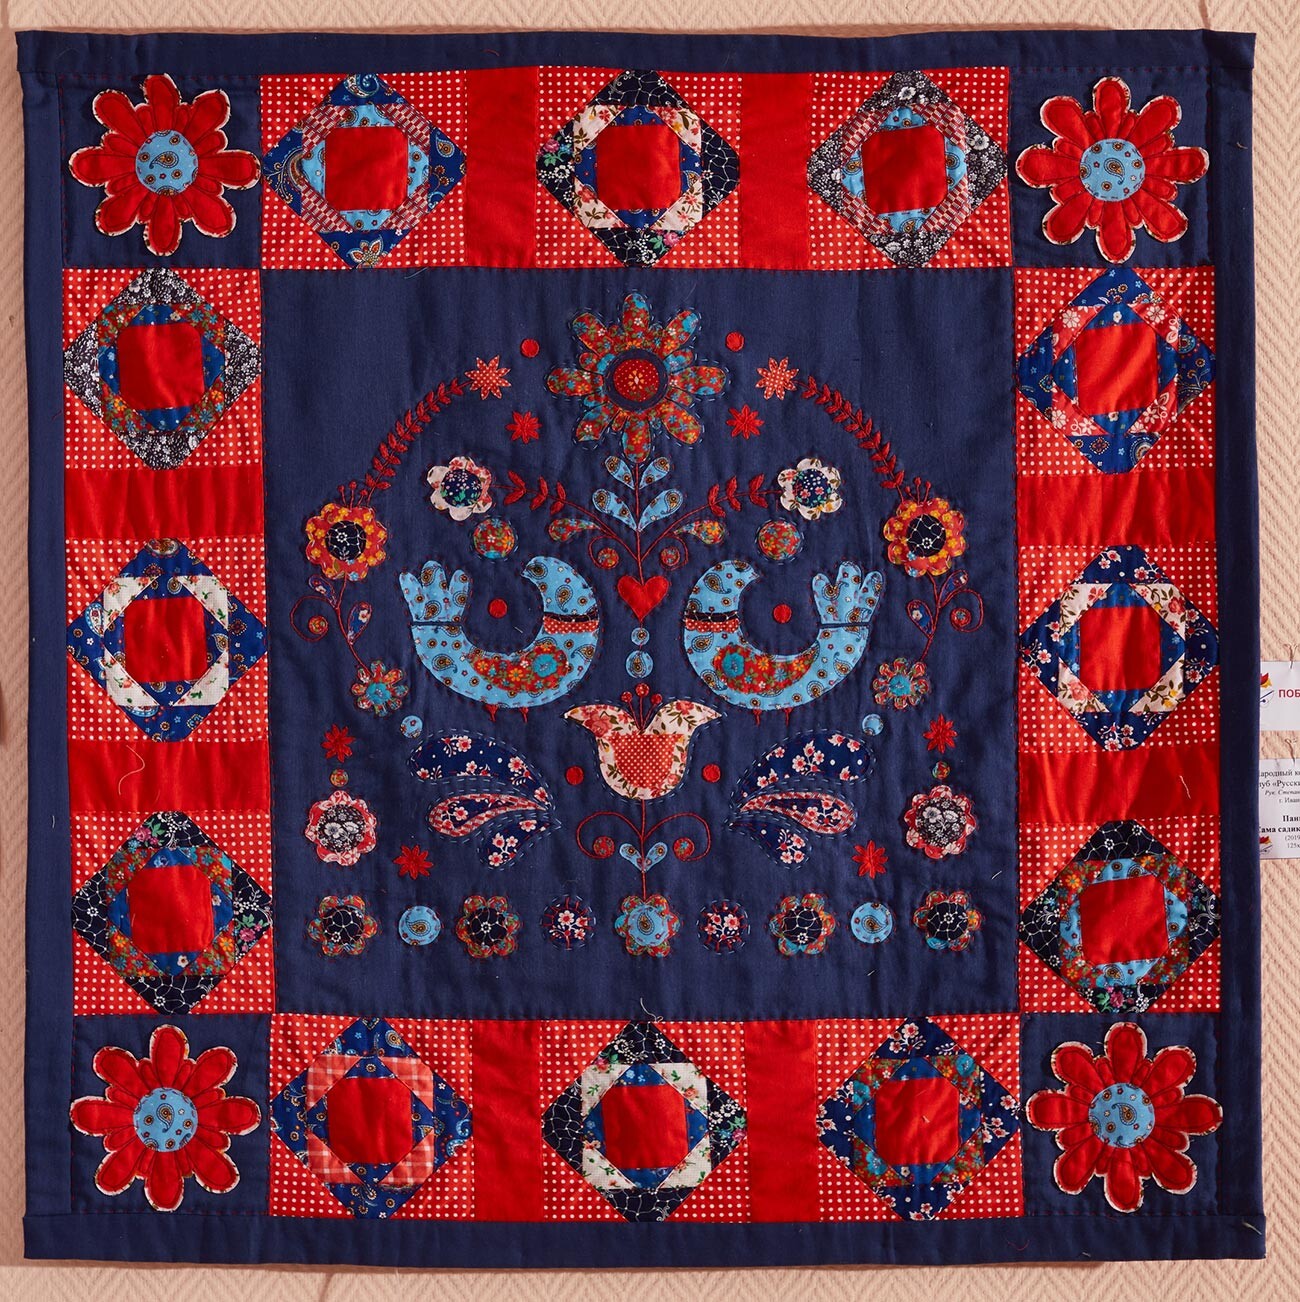 L’opera vincitrice del concorso “Mosaico patchwork della Russia”: Svetlana Zolotareva, arazzo, “L’albero della vita”, 2020, Regione di Perm
